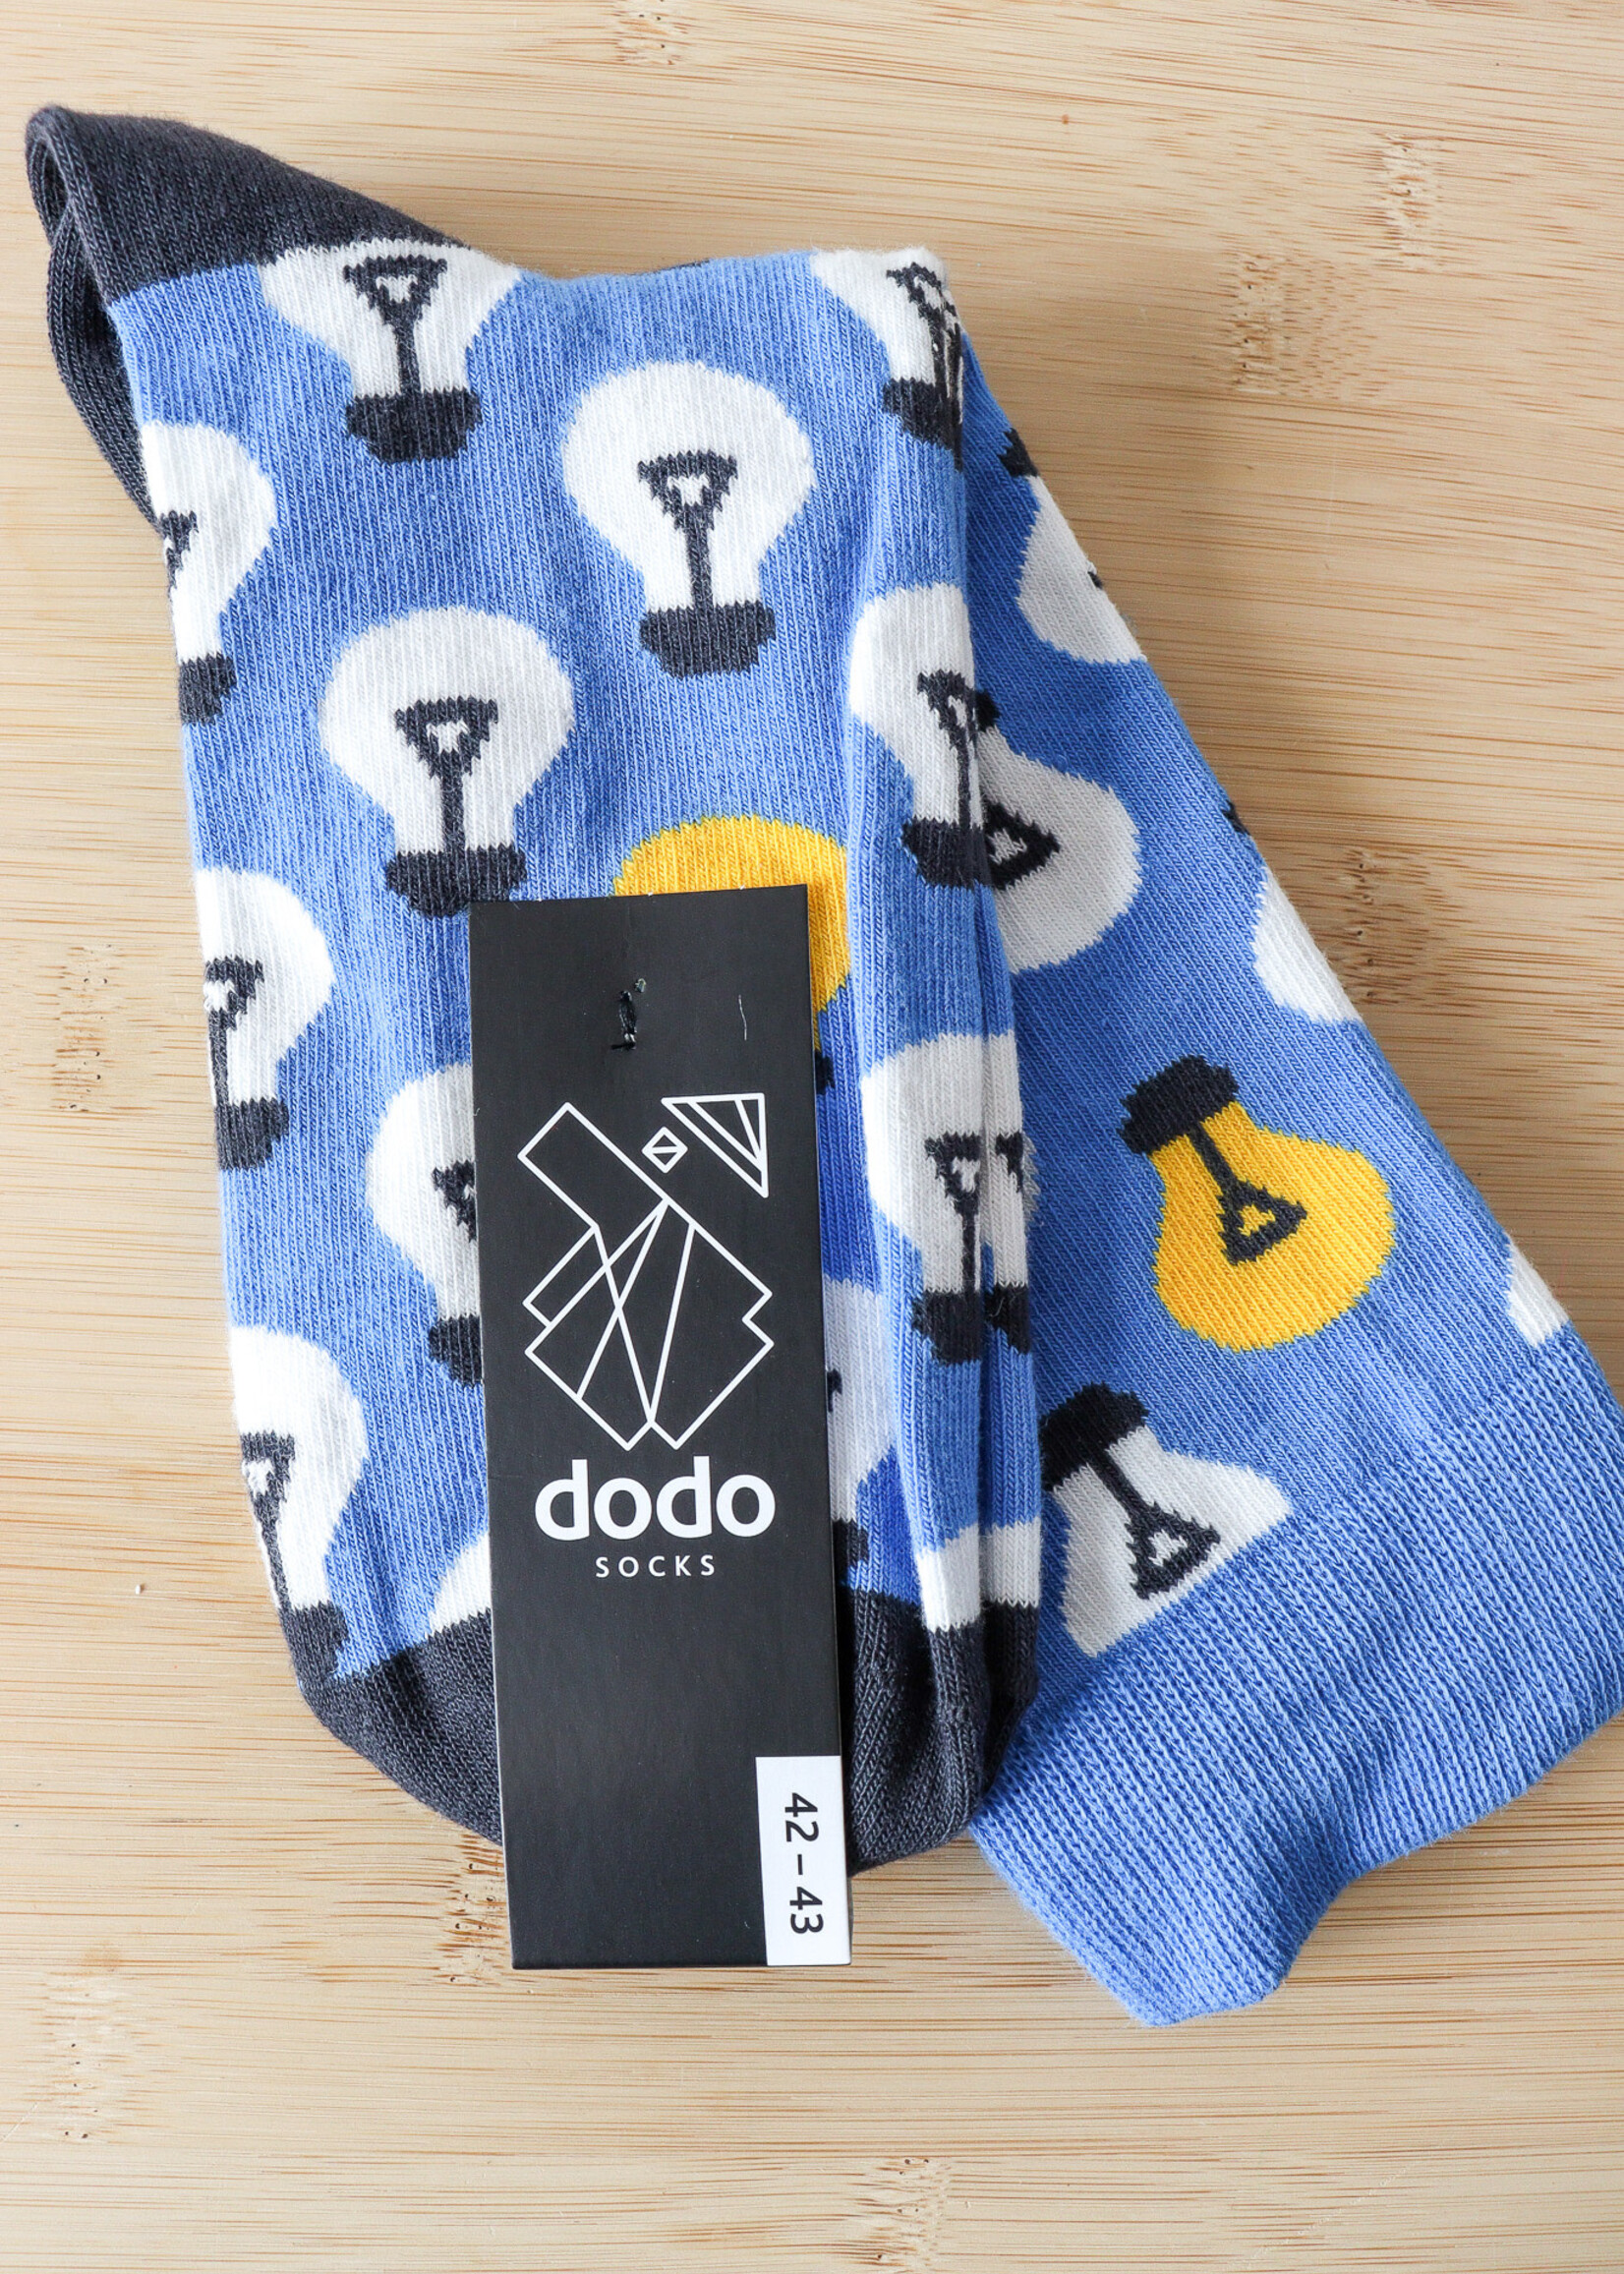 APPAREL -  Dodo Socks  Lamps